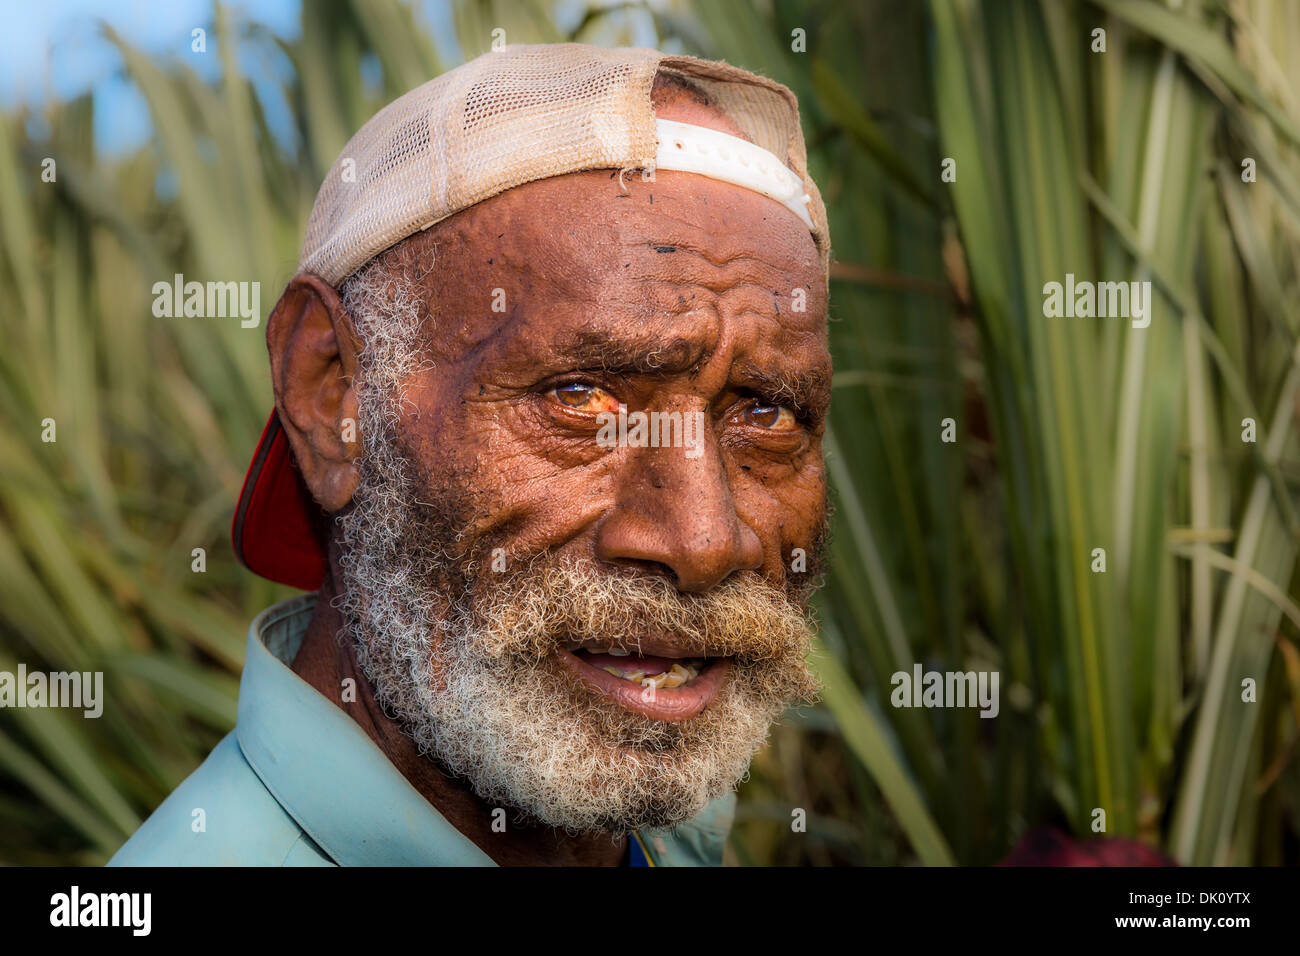 Lavoratore agricolo interessato su un campo di canna da zucchero, Sigatoka, Viti Levu, Isole Figi Foto Stock